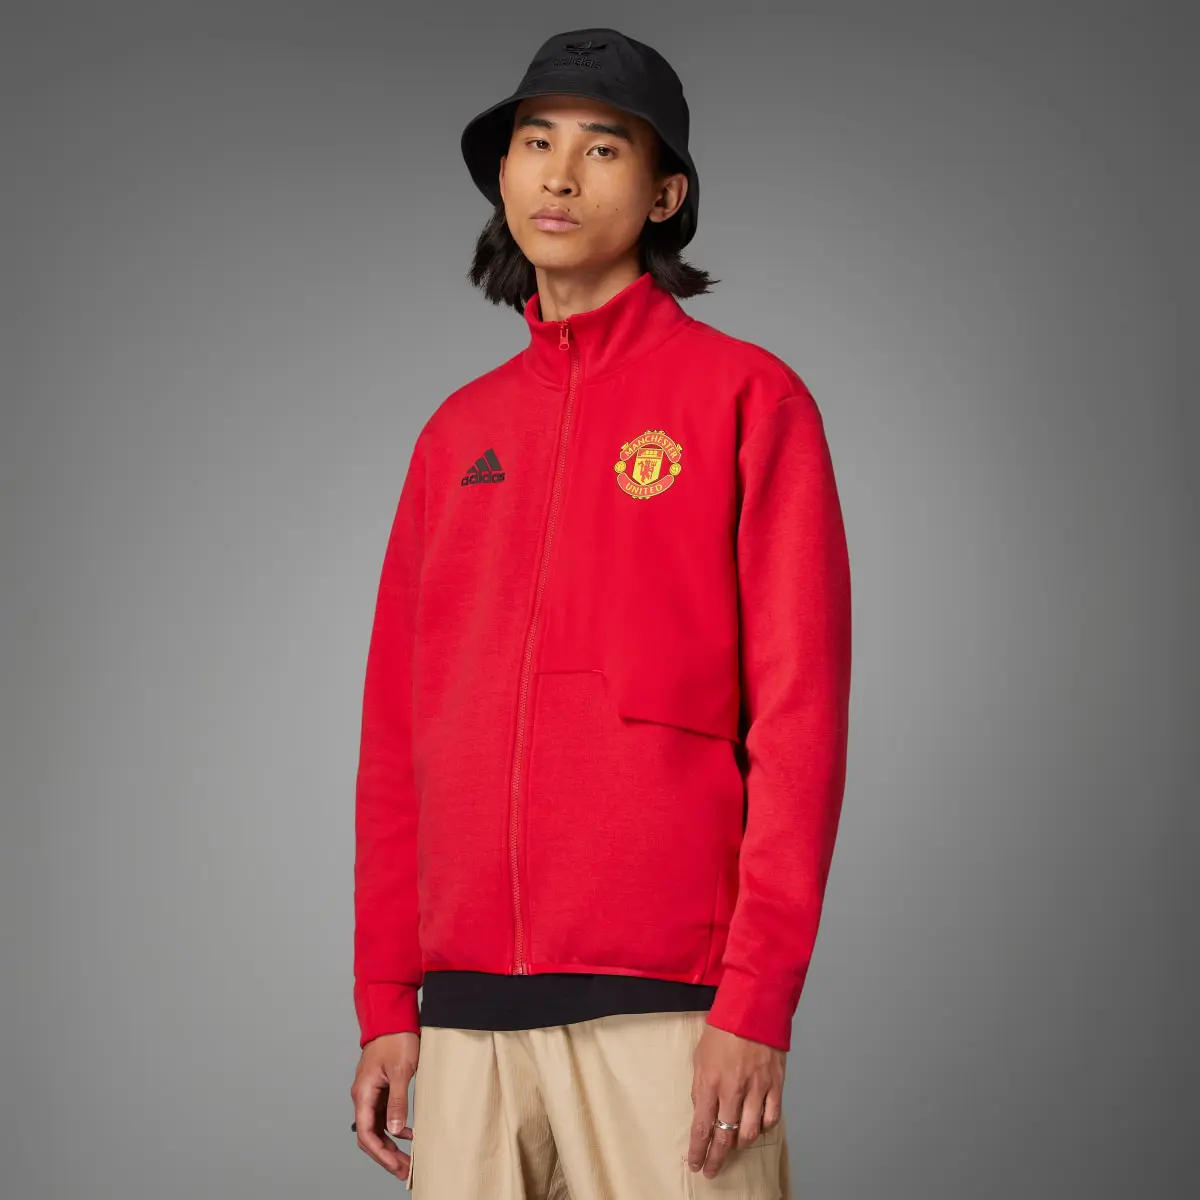 Adidas Manchester United Anthem Jacket. 1